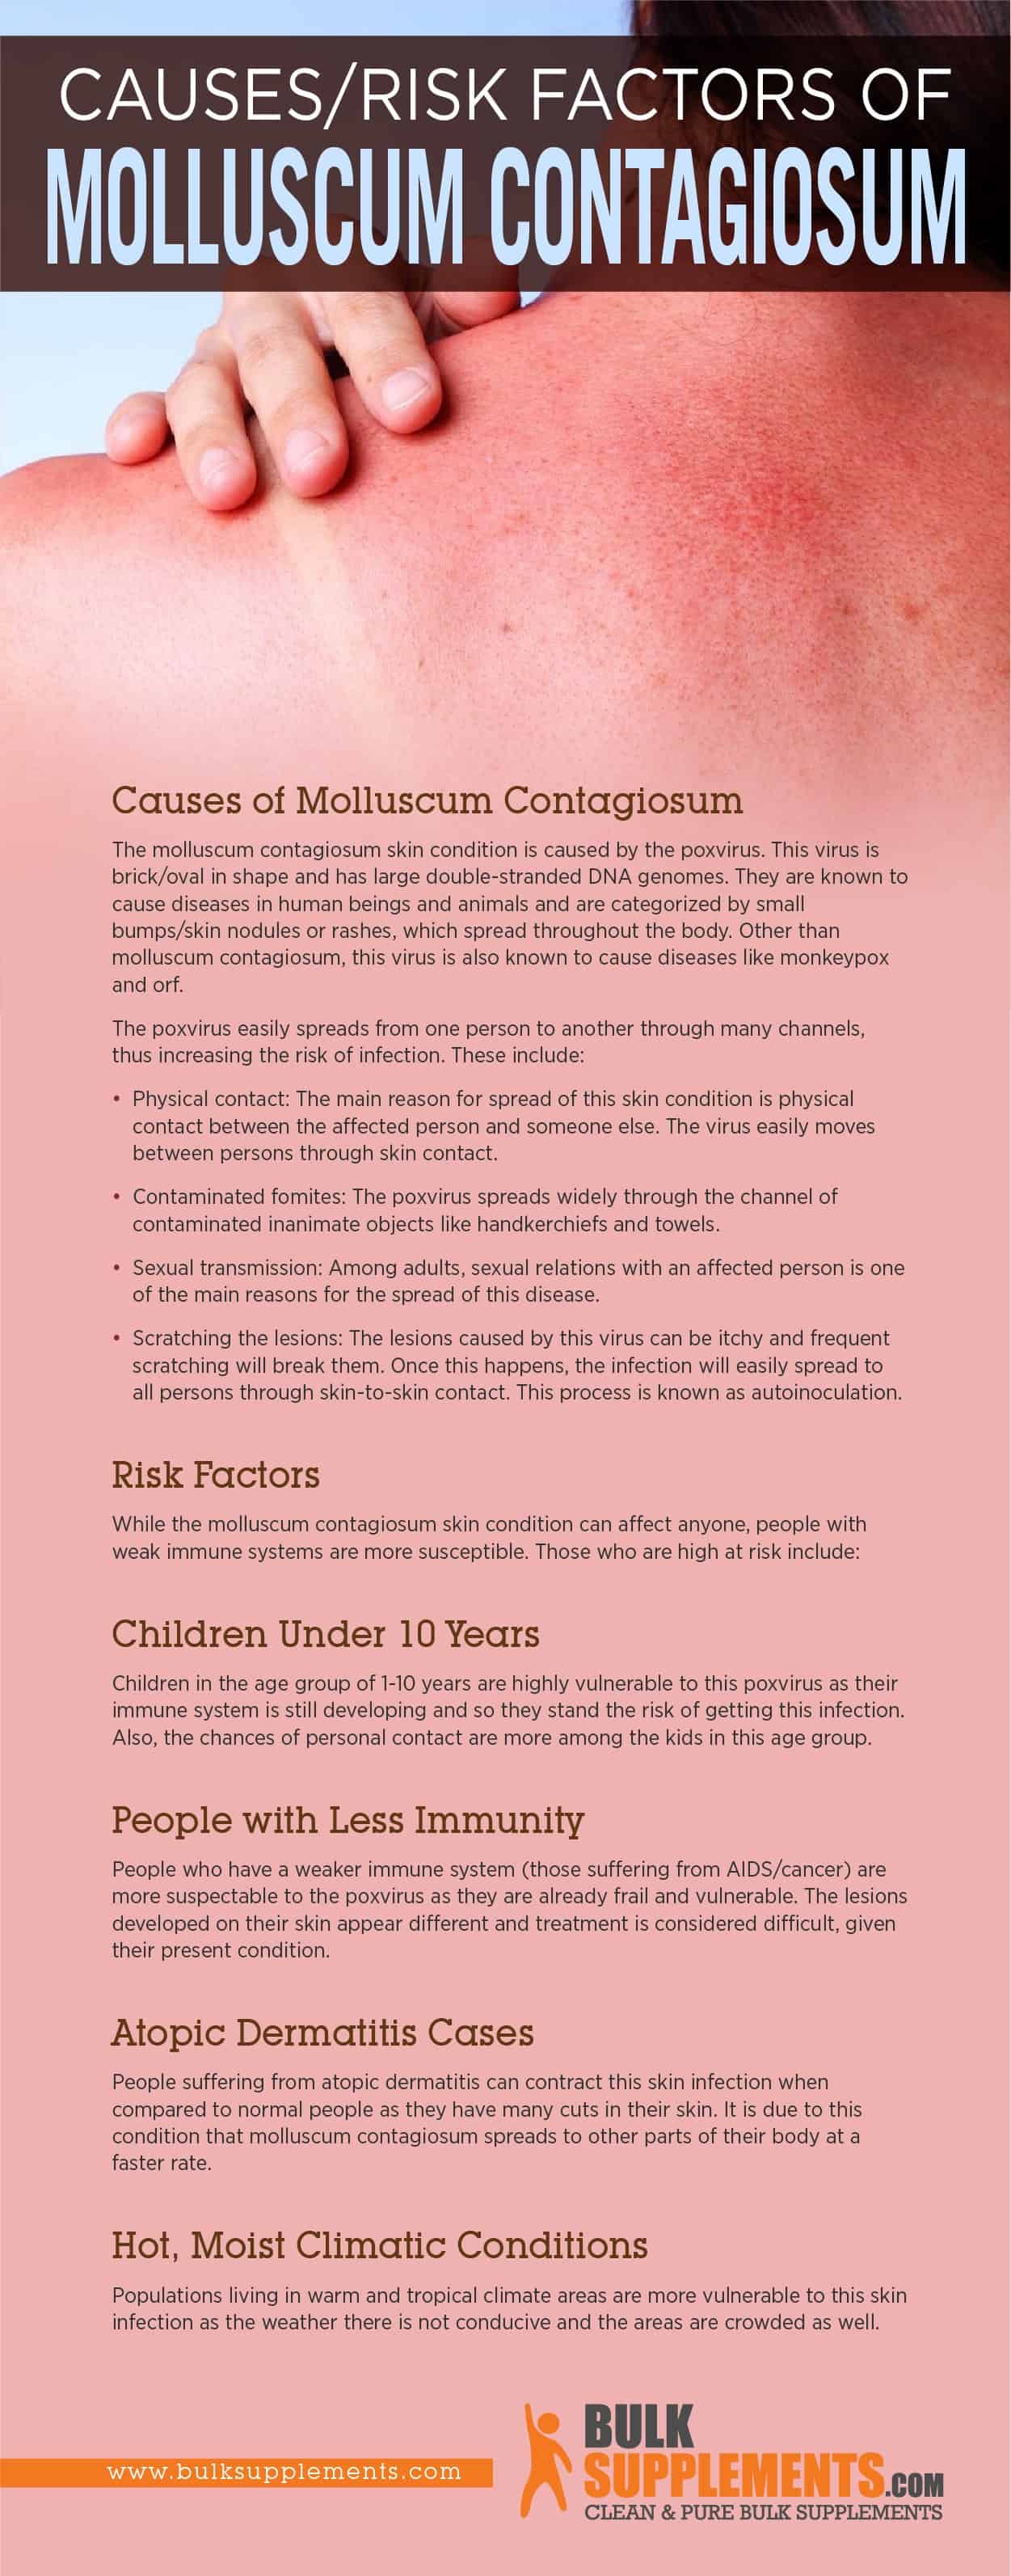 Causes/Risk Factors of Molluscum Contagiosum